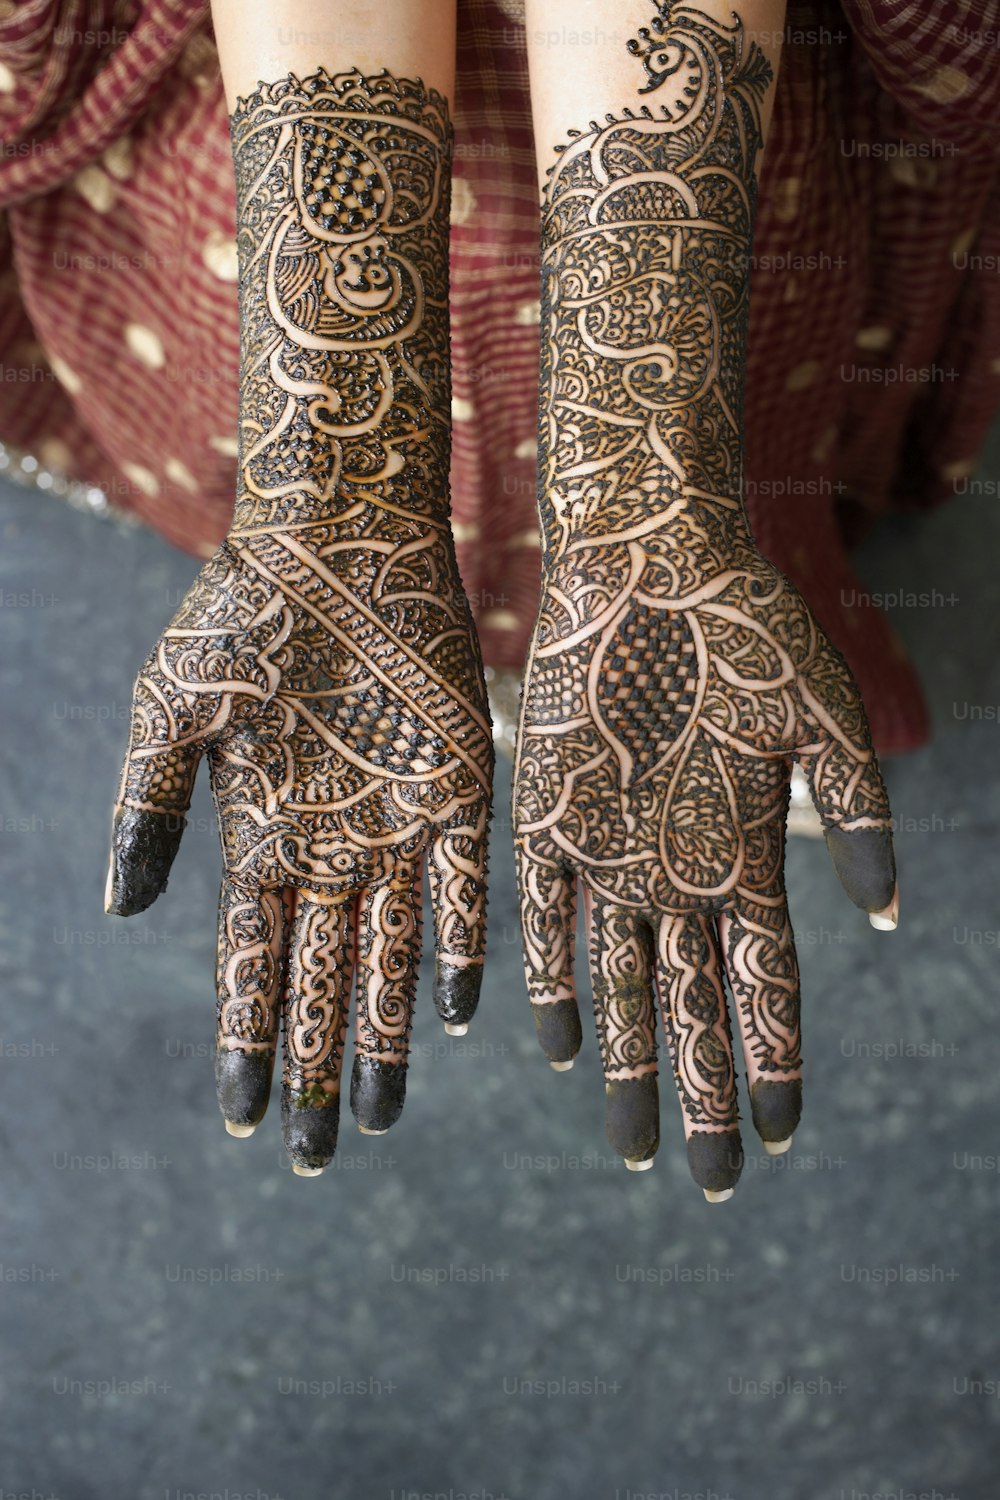 Die Hände einer Frau mit Henna-Tattoos darauf